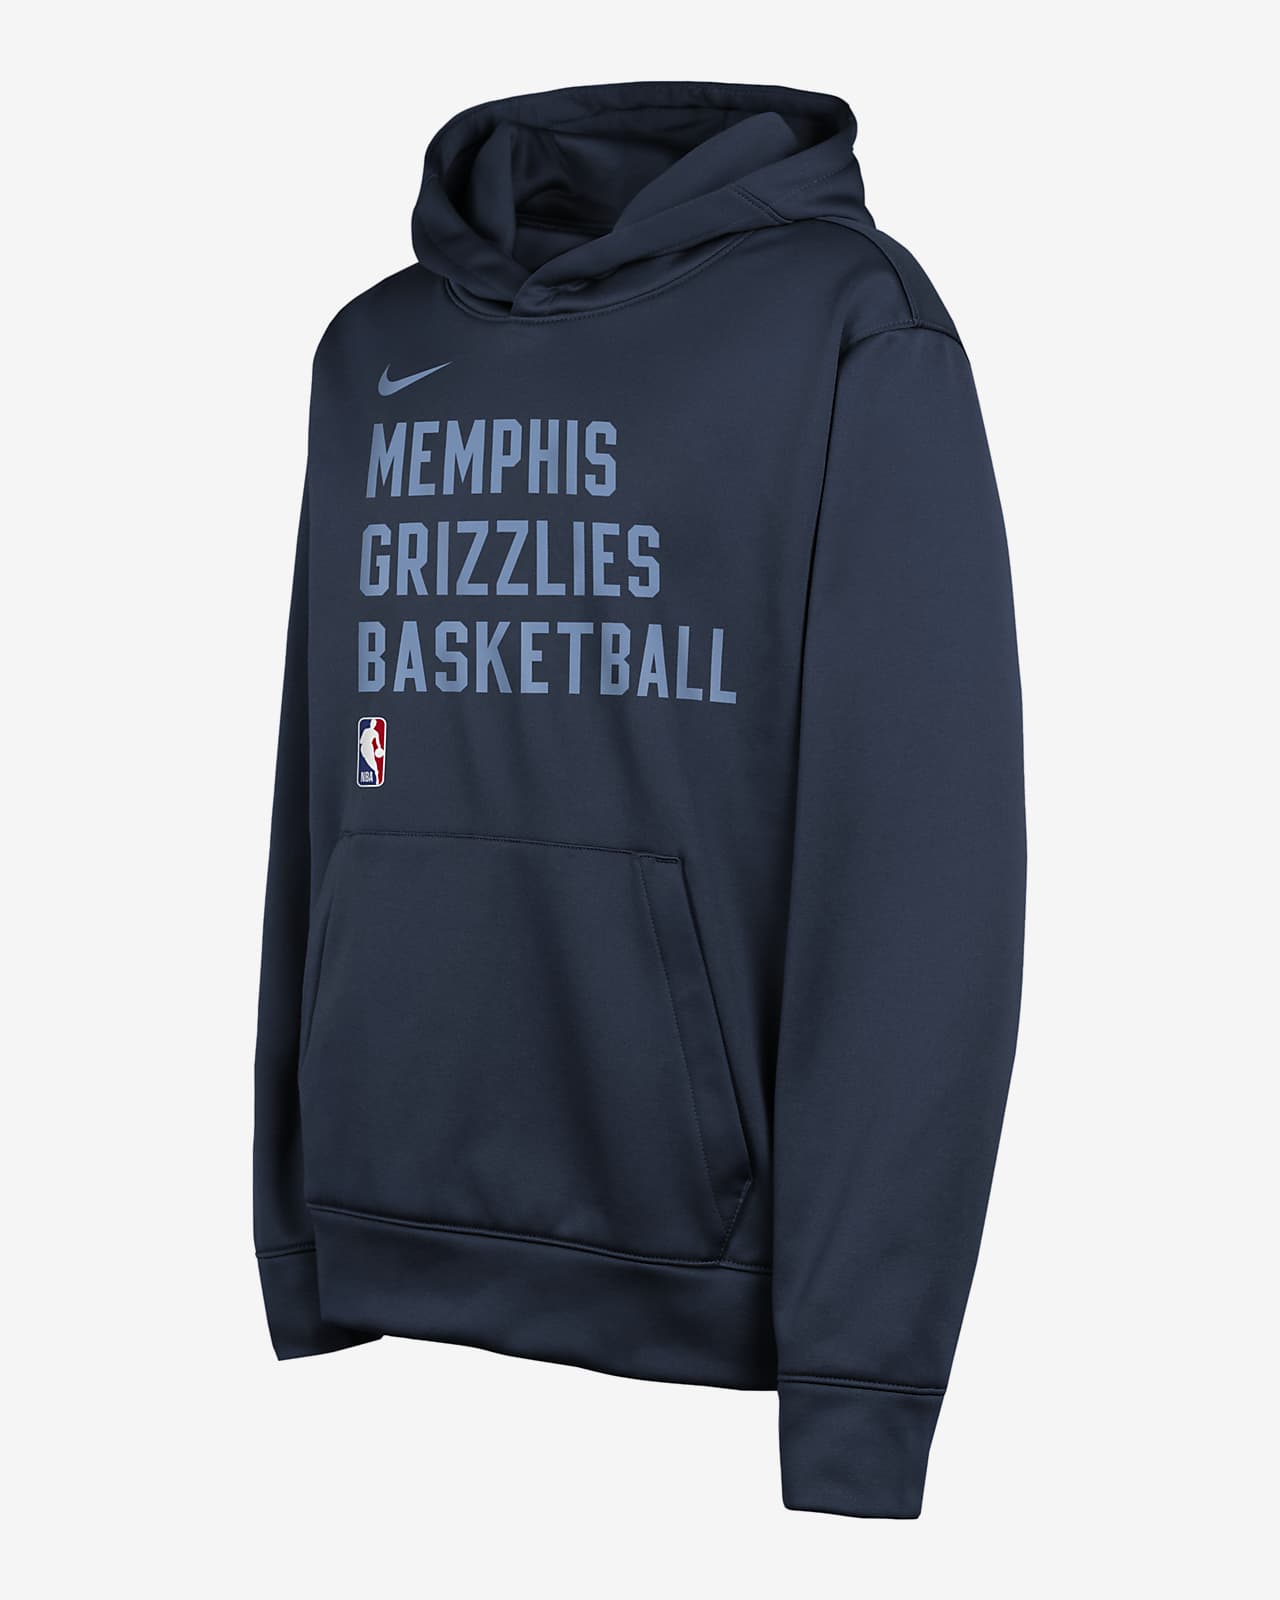 Sudadera con gorro sin cierre Nike Dri-FIT de la NBA para niños talla grande Memphis Grizzlies